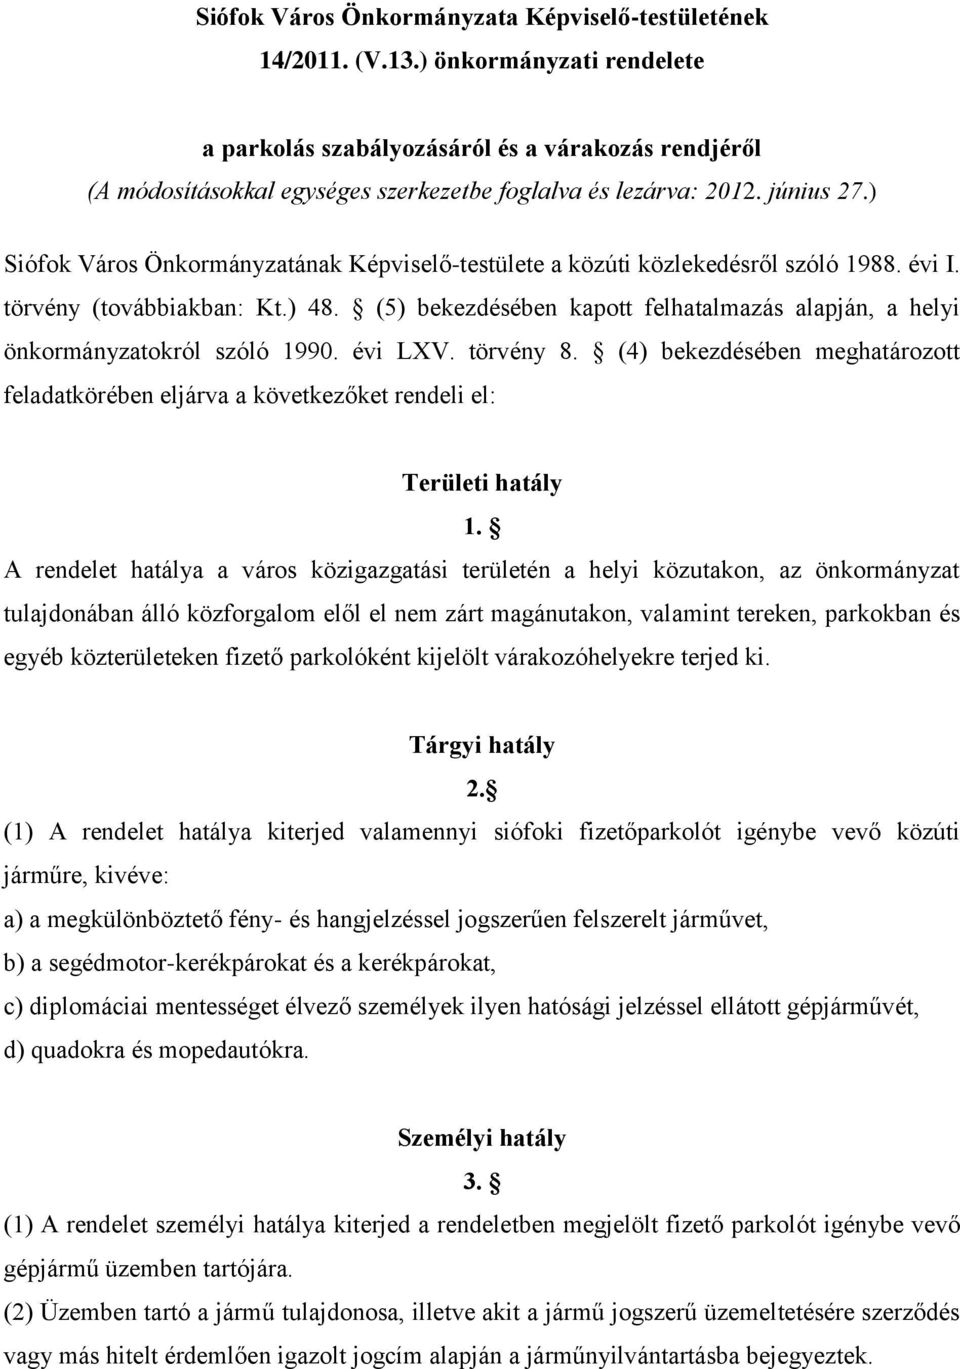 ) Siófok Város Önkormányzatának Képviselő-testülete a közúti közlekedésről szóló 1988. évi I. törvény (továbbiakban: Kt.) 48.